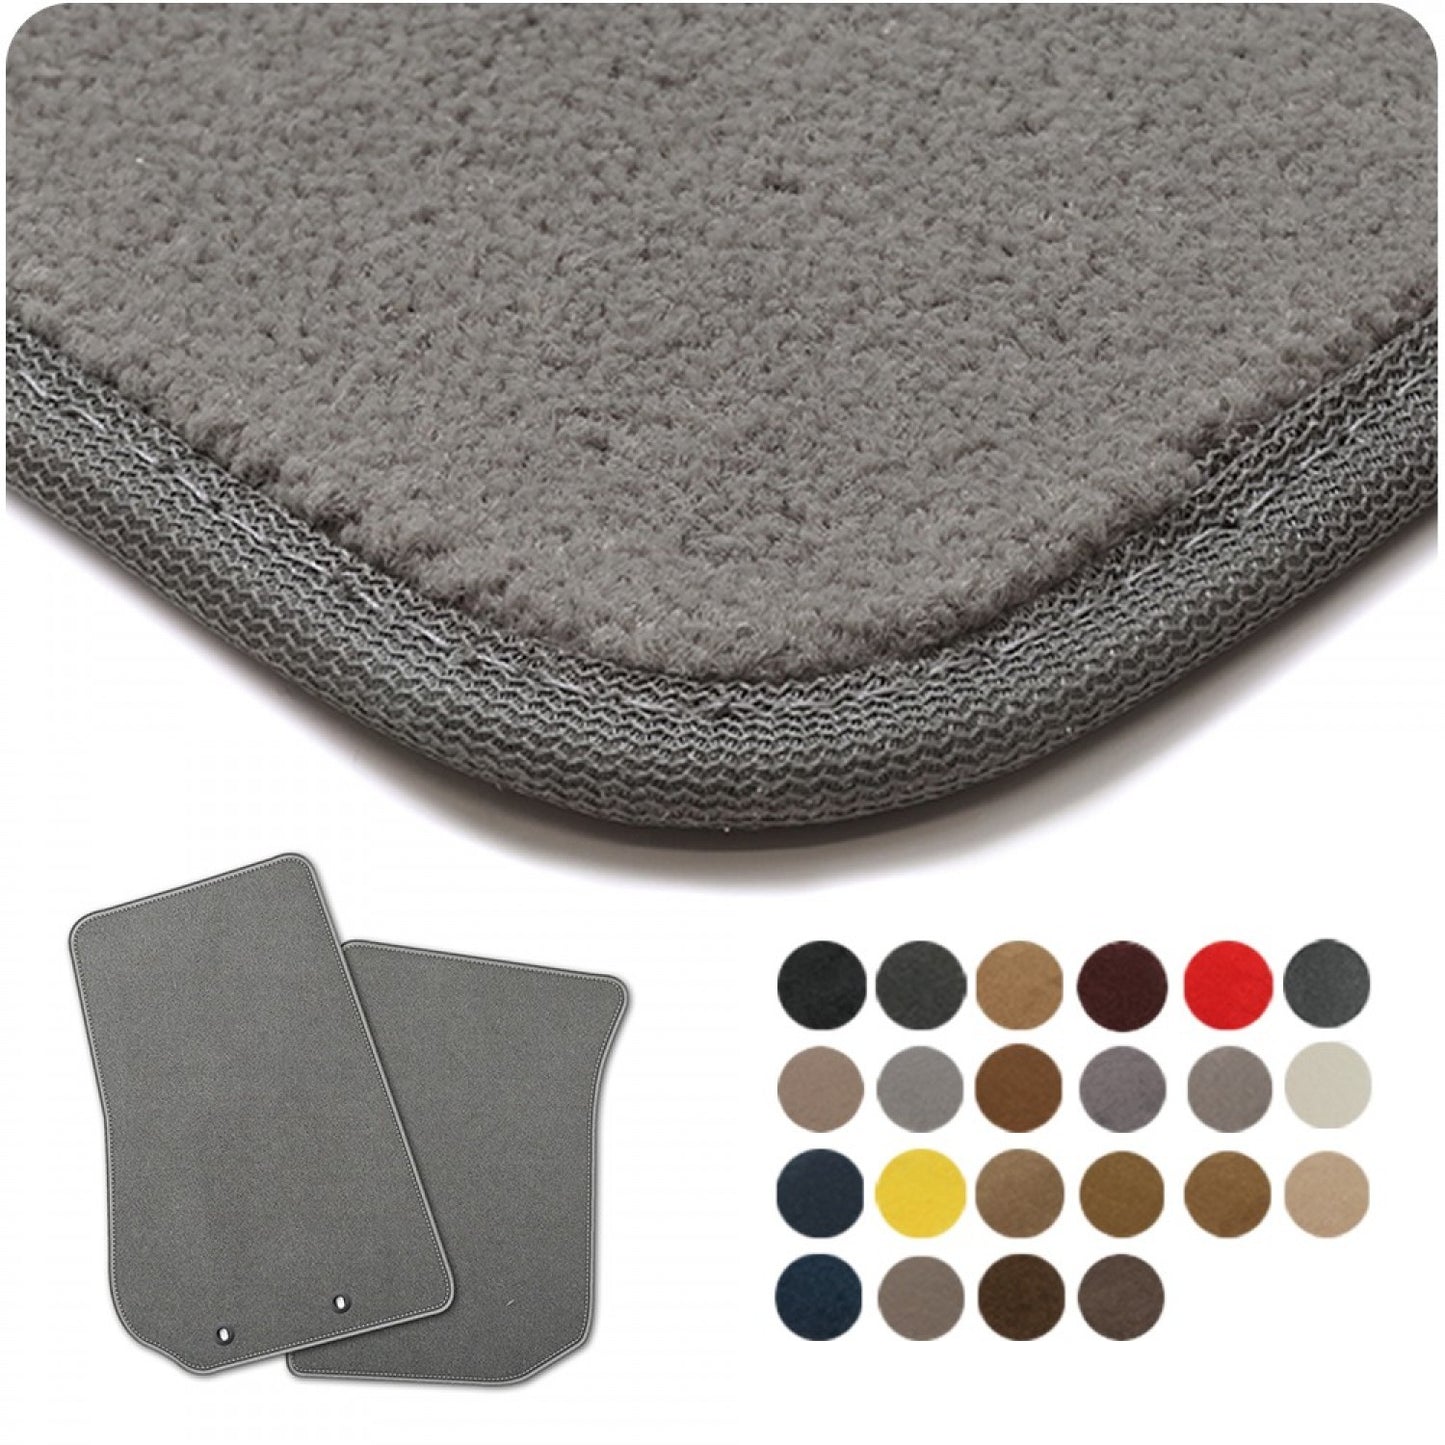 Coverking Designer Floormat Premium Plush DFMA